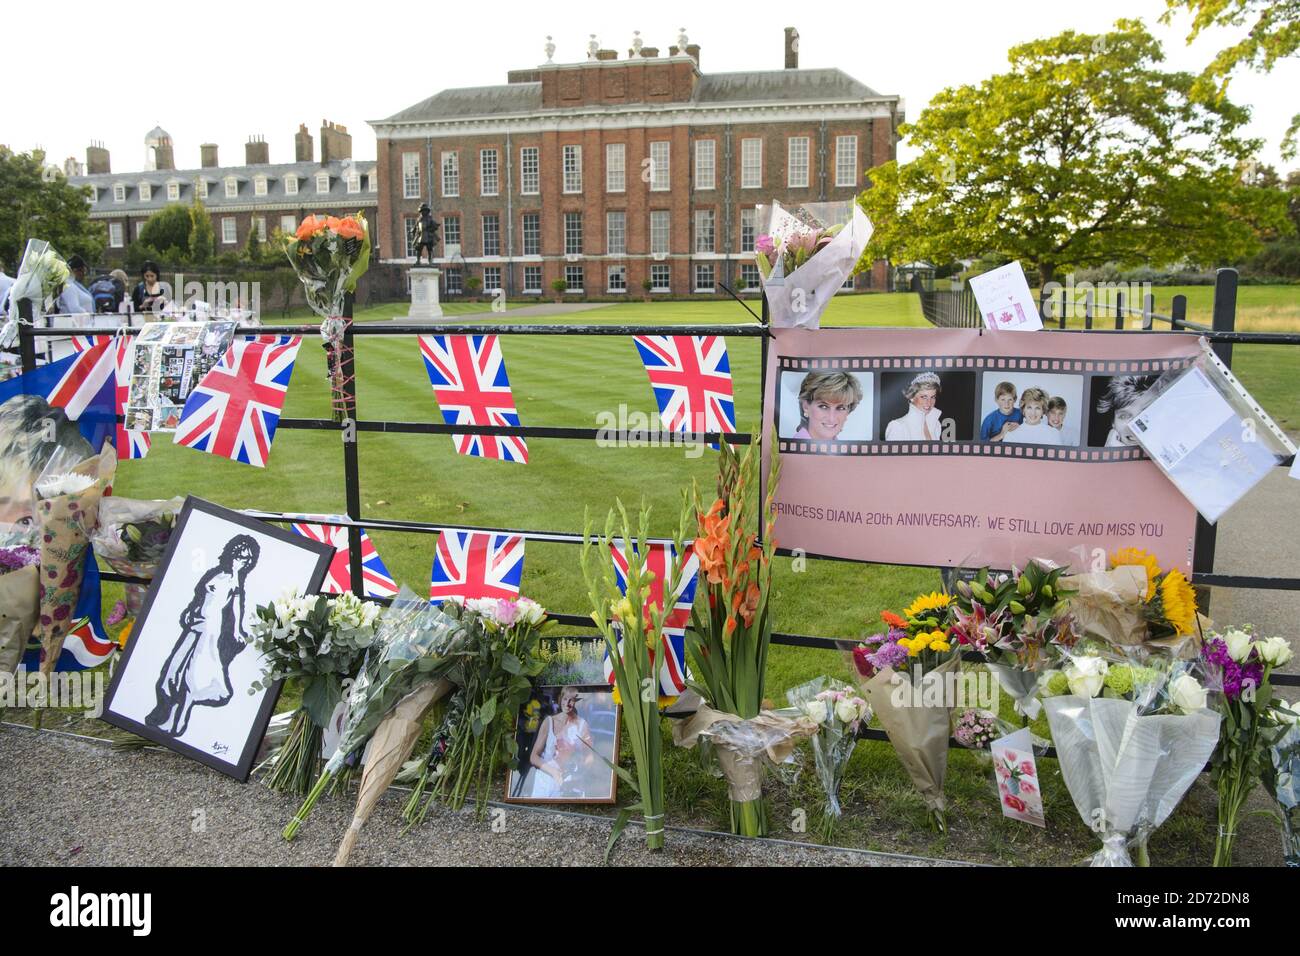 Fiori e tributi per celebrare il ventesimo anniversario della morte di Diana, principessa di Galles fuori Kensington Palace, a Londra. Data immagine: Giovedì 31 agosto, 2017. Il credito fotografico dovrebbe essere: Matt Crossick/ EMPICS Entertainment. Foto Stock